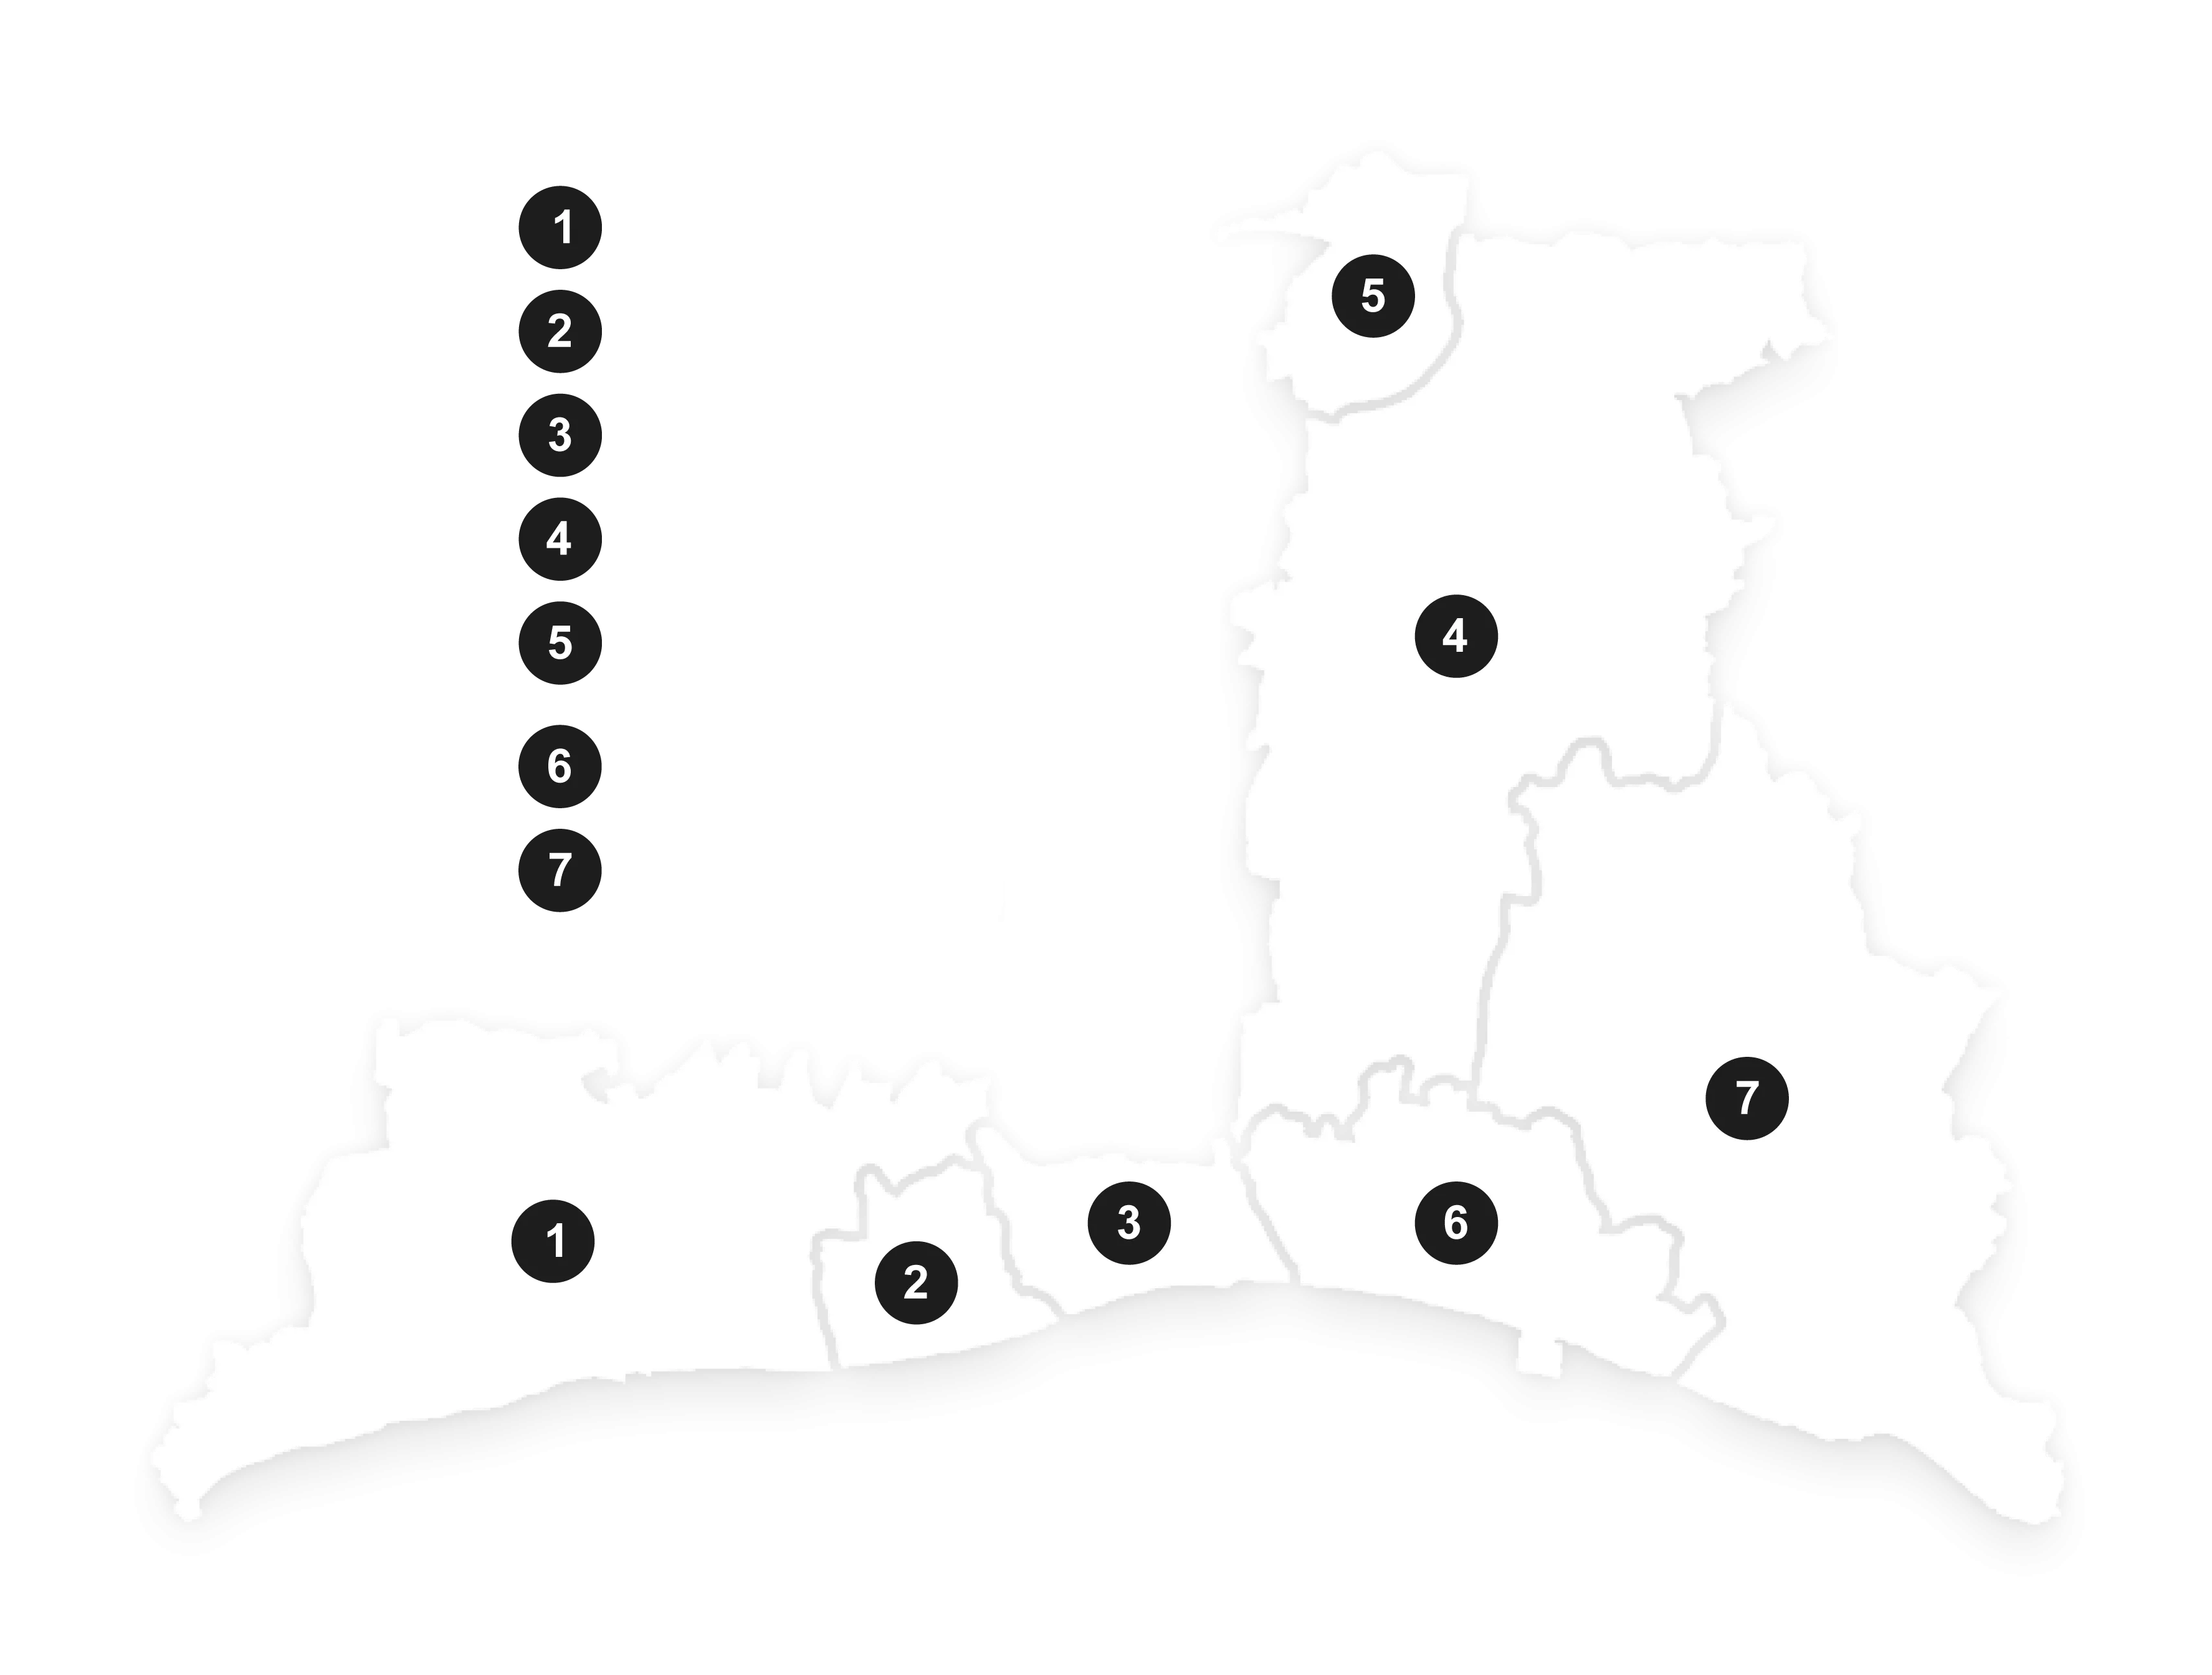 GBEB region map (1 Arun, 2 Worthing, 3 Adur, 4, Mid Sussex, 5 Crawley, 6 Brighton & Hove, 7 Lewes)